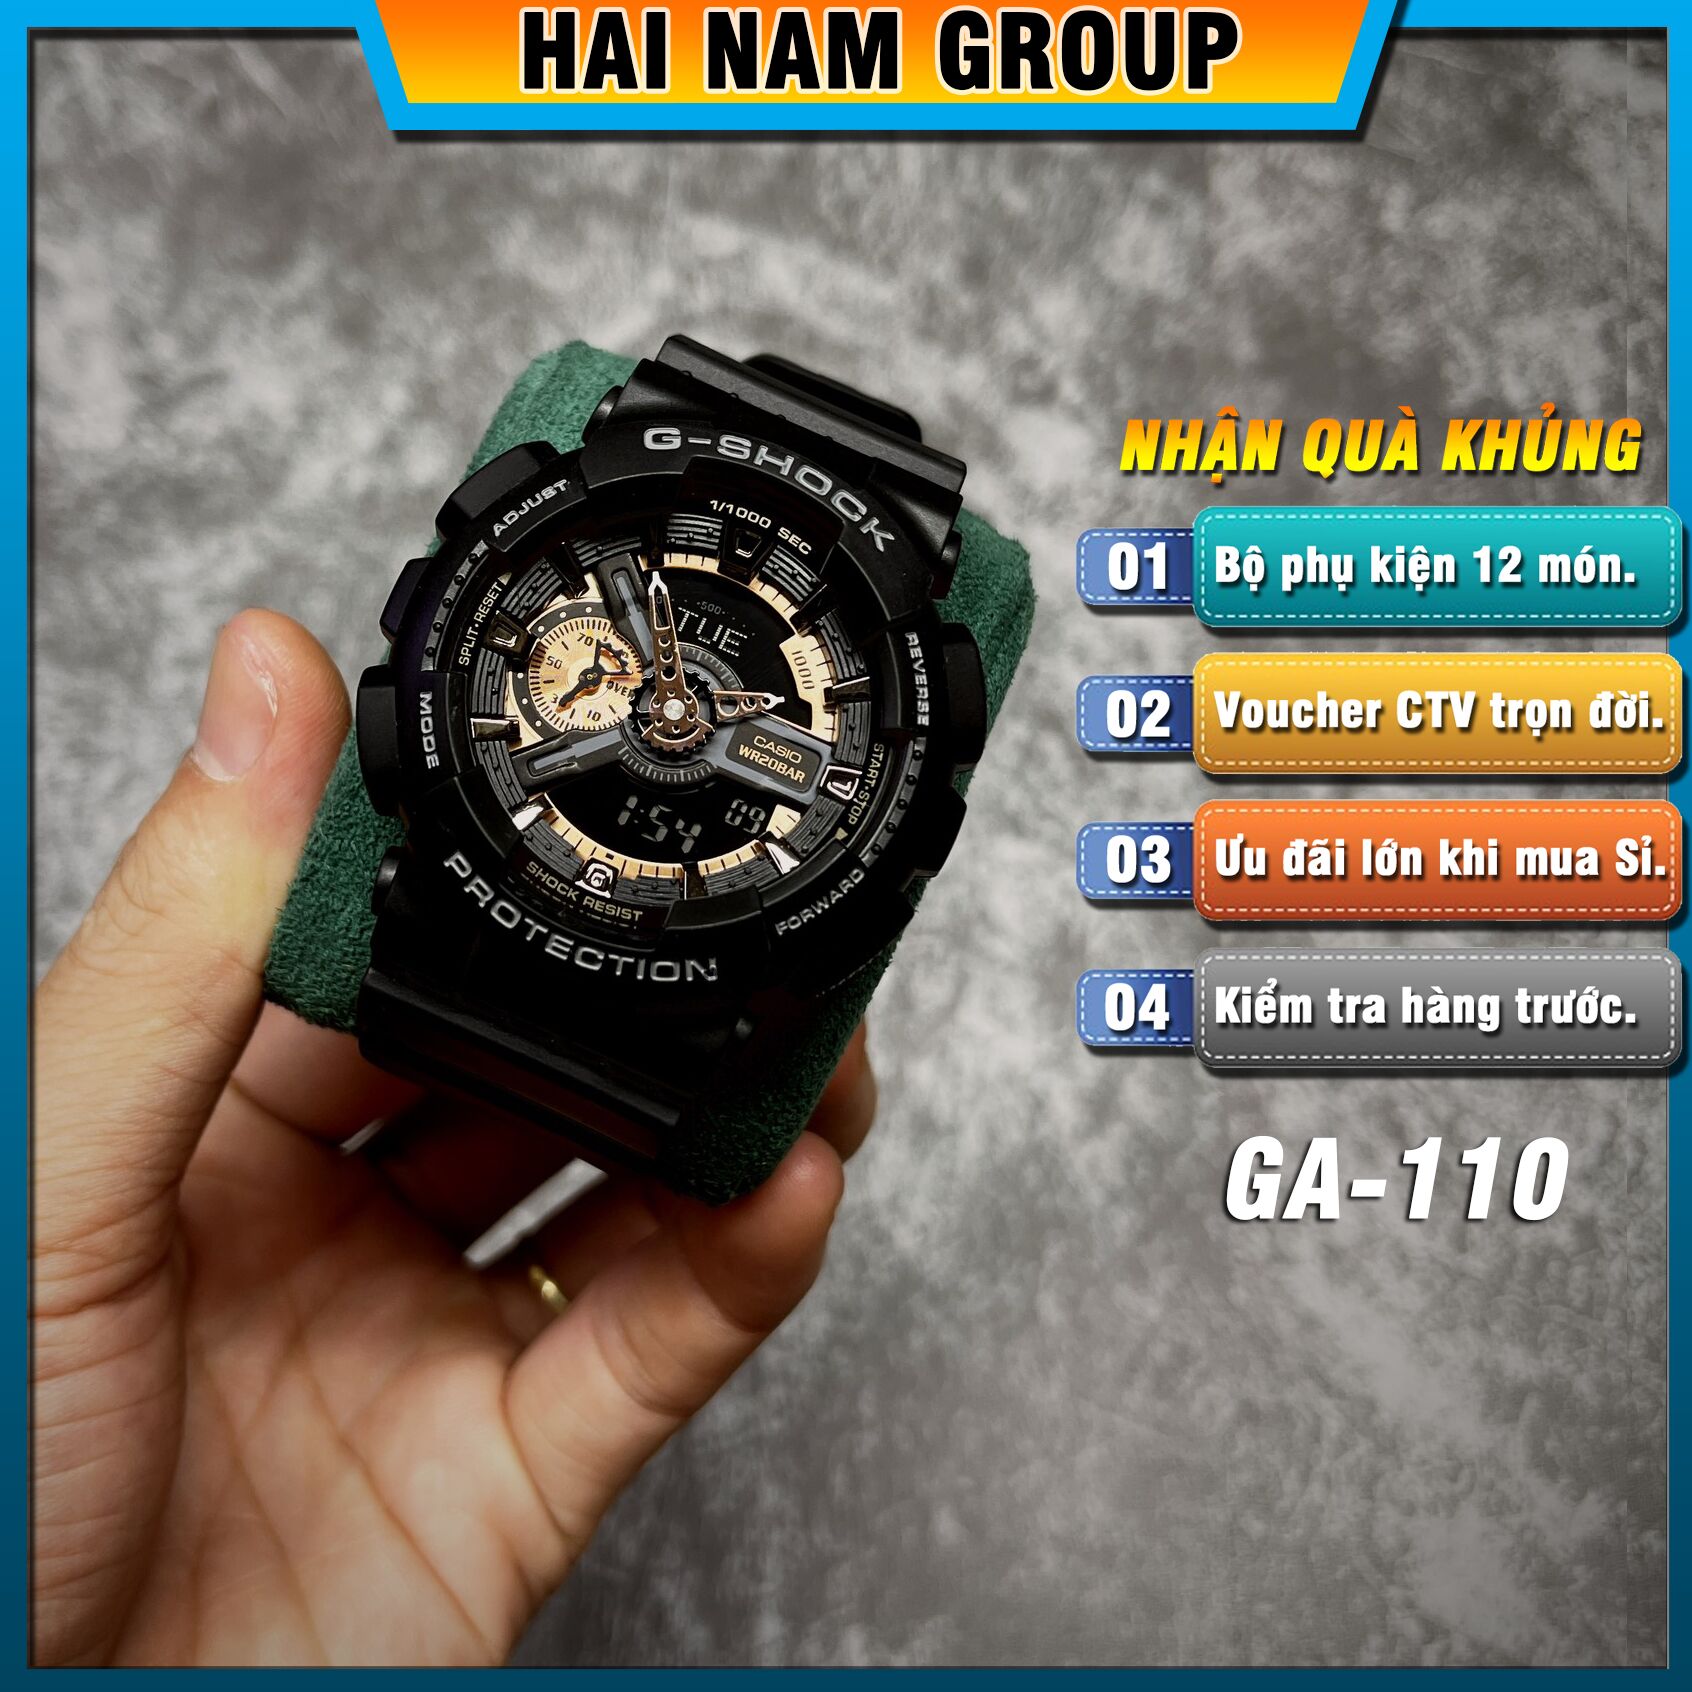 Đồng hồ nam nữ G-SHOCK GA-110RG-1A REP 1:1 Màu Đen Đồng tại Hải Nam Group 1